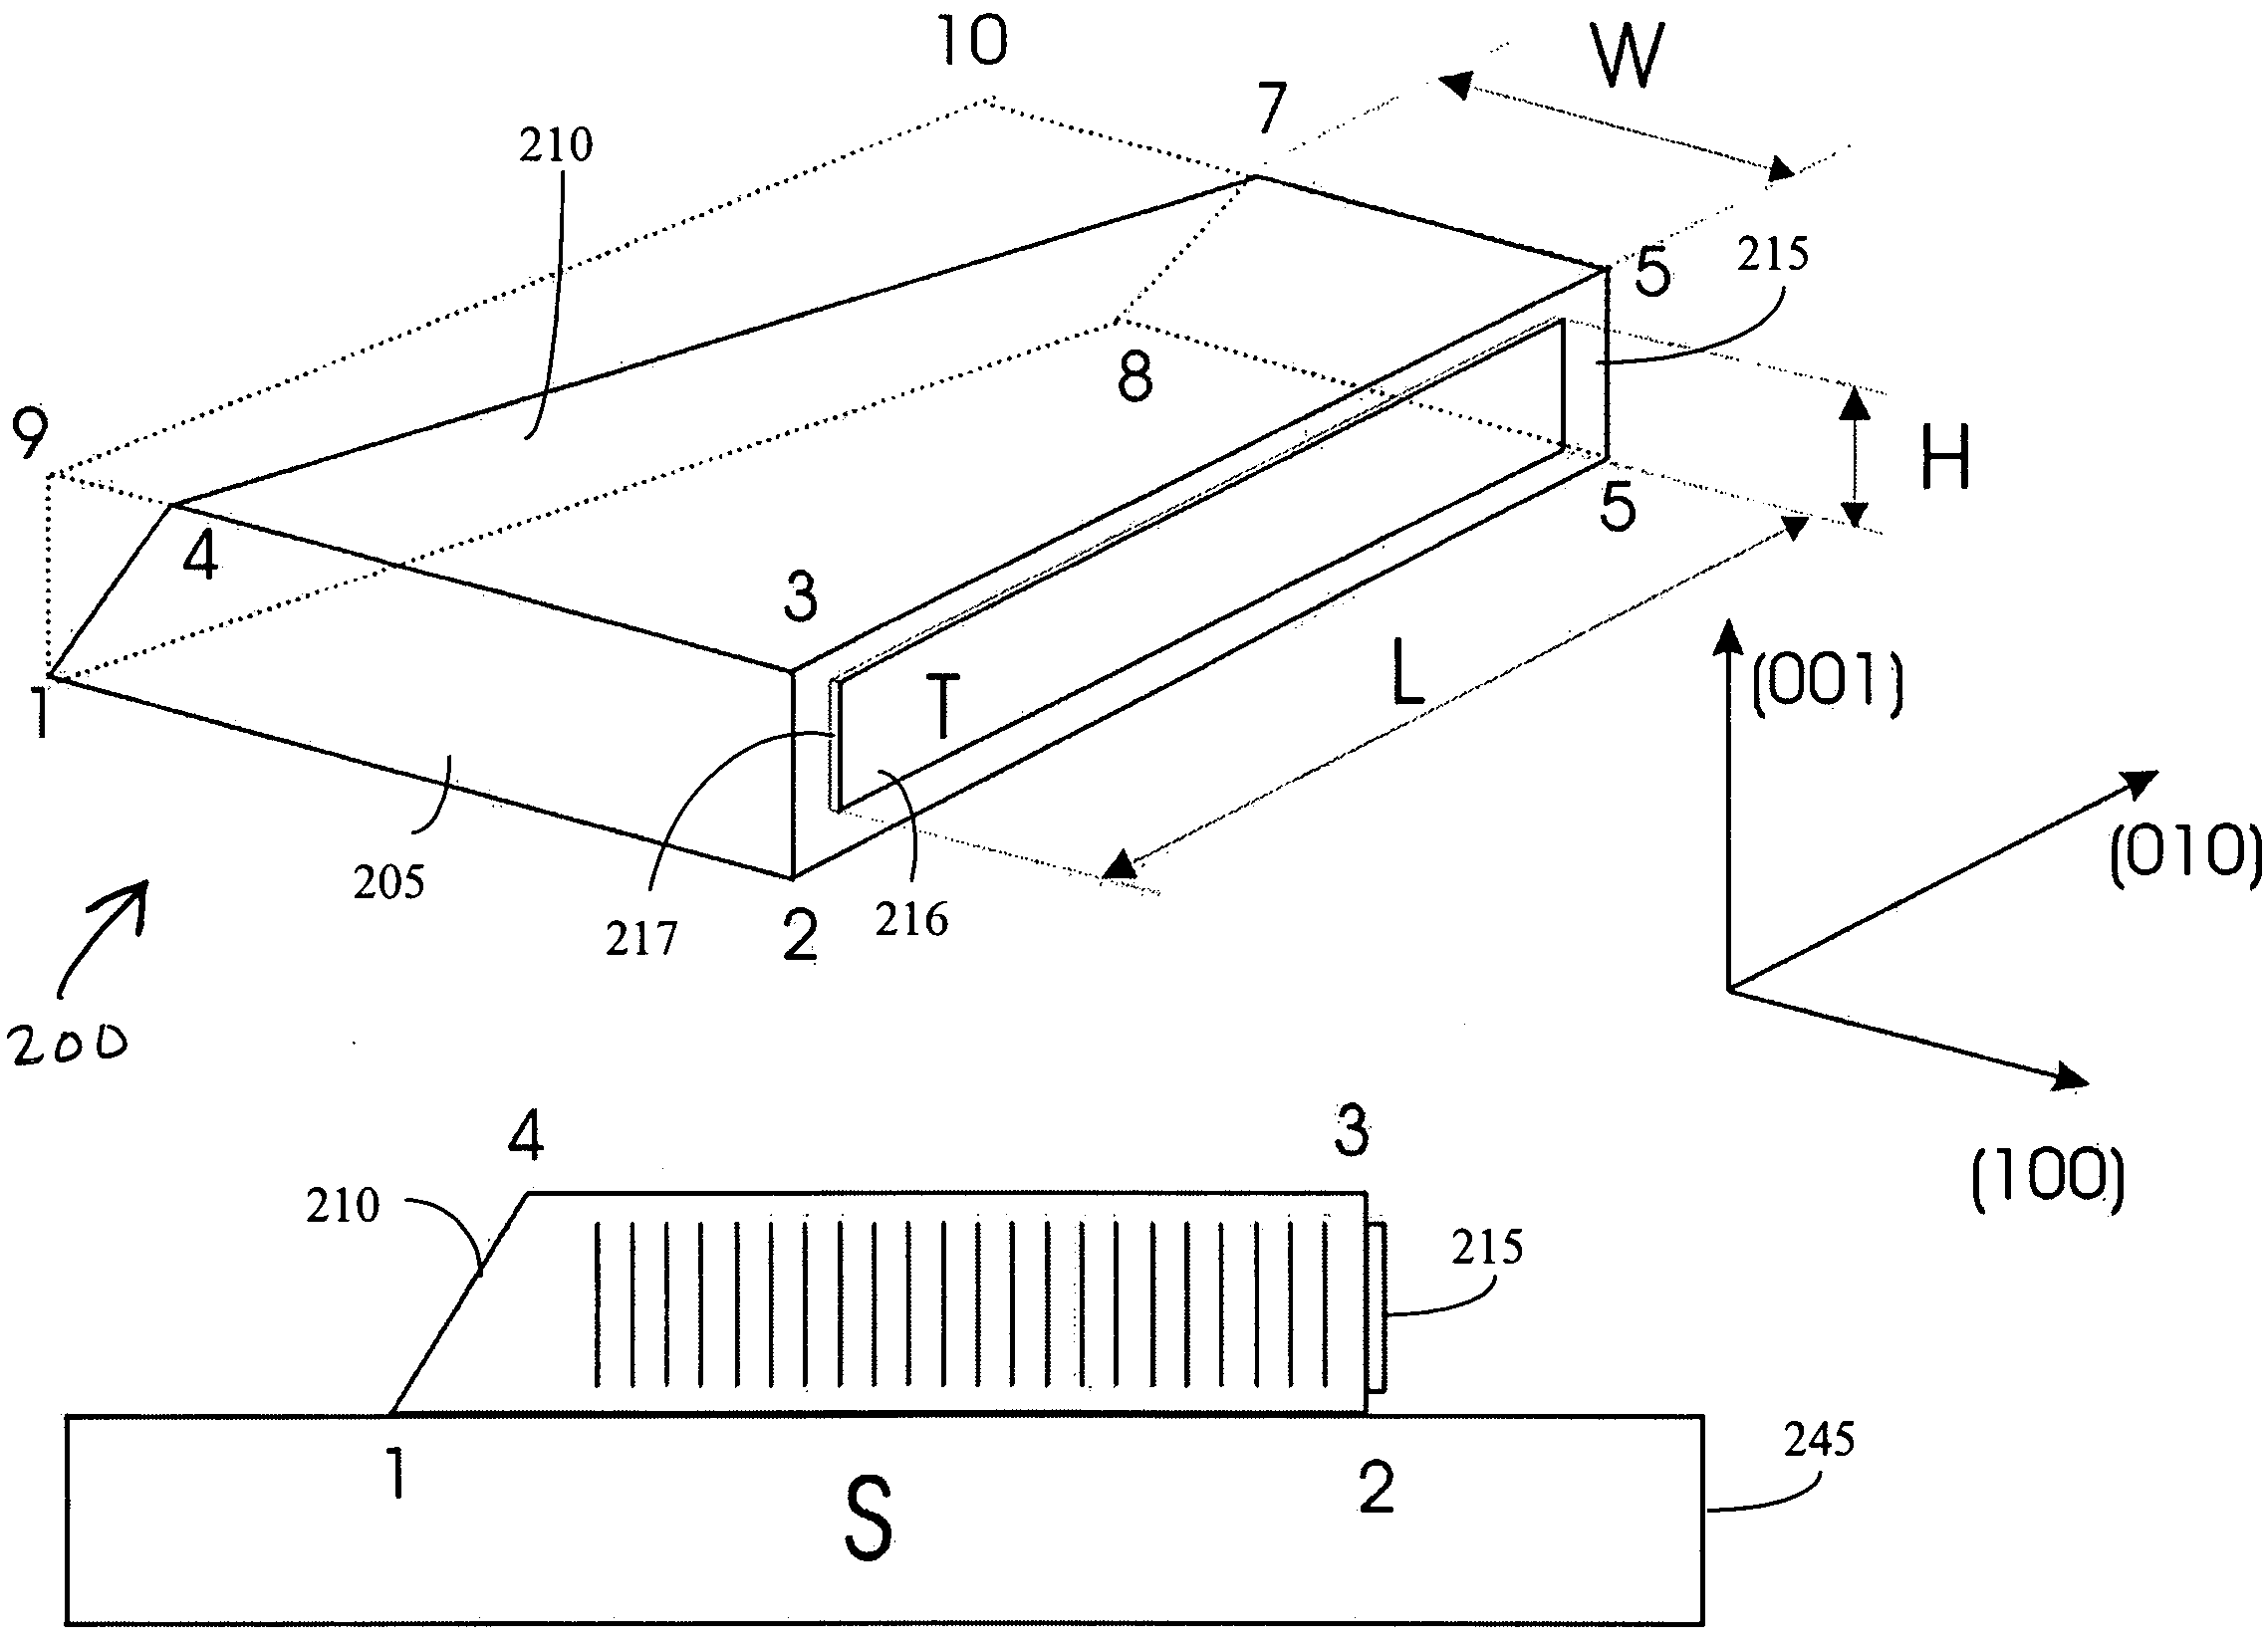 Silicon acousto-optic modulator